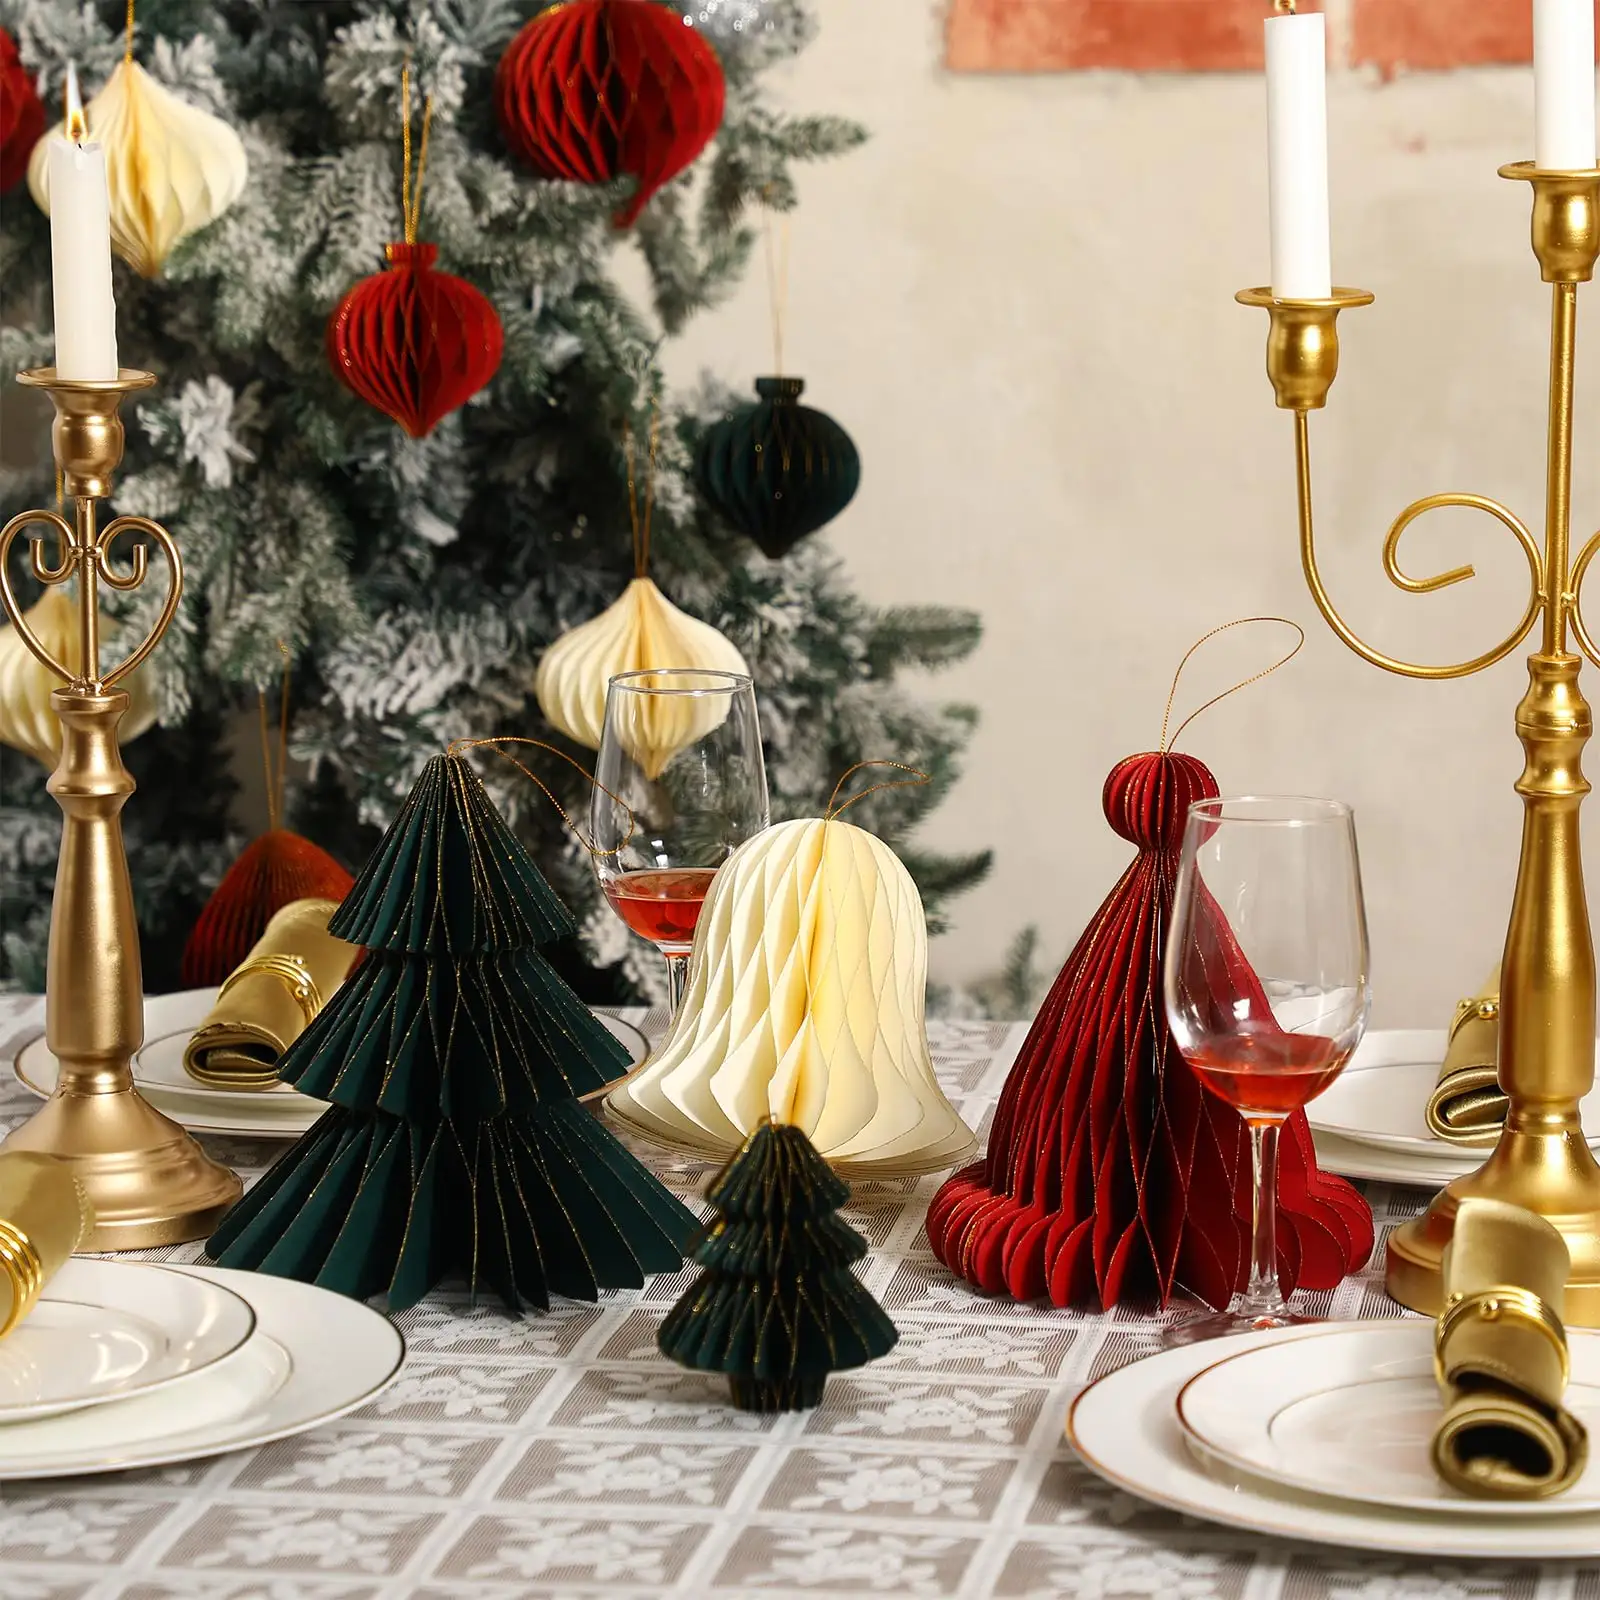 زخارف ذهبية على شكل حافة لامعة قابلة للتحلل الحيوي لعيد الميلاد ، زخارف طاولة قرص العسل